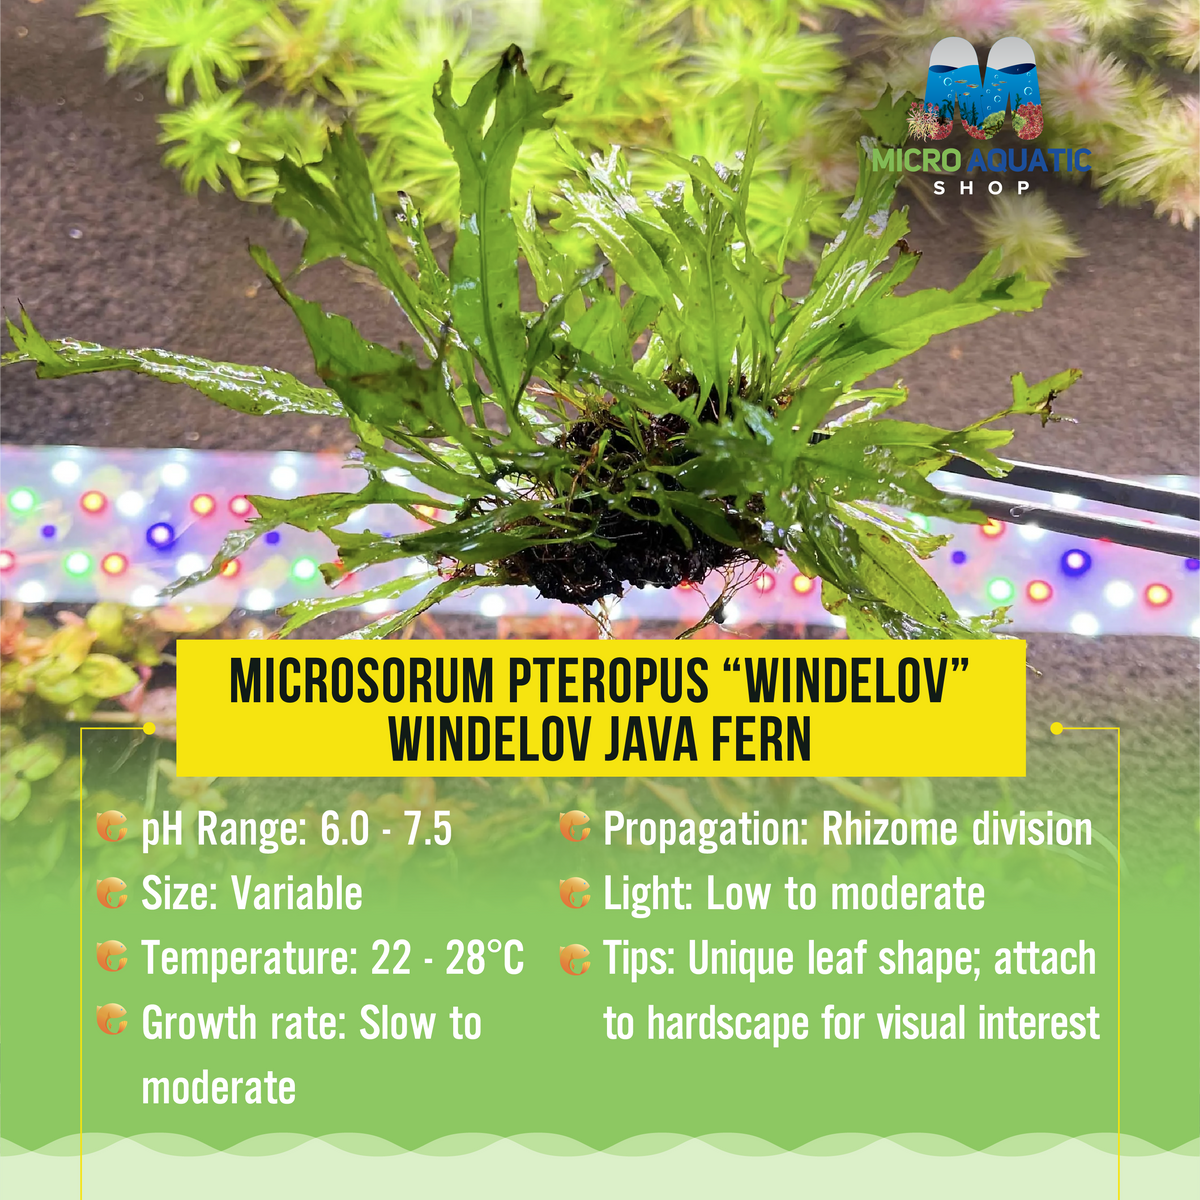 Microsorum pteropus “Windelov” - Windelov Java Fern